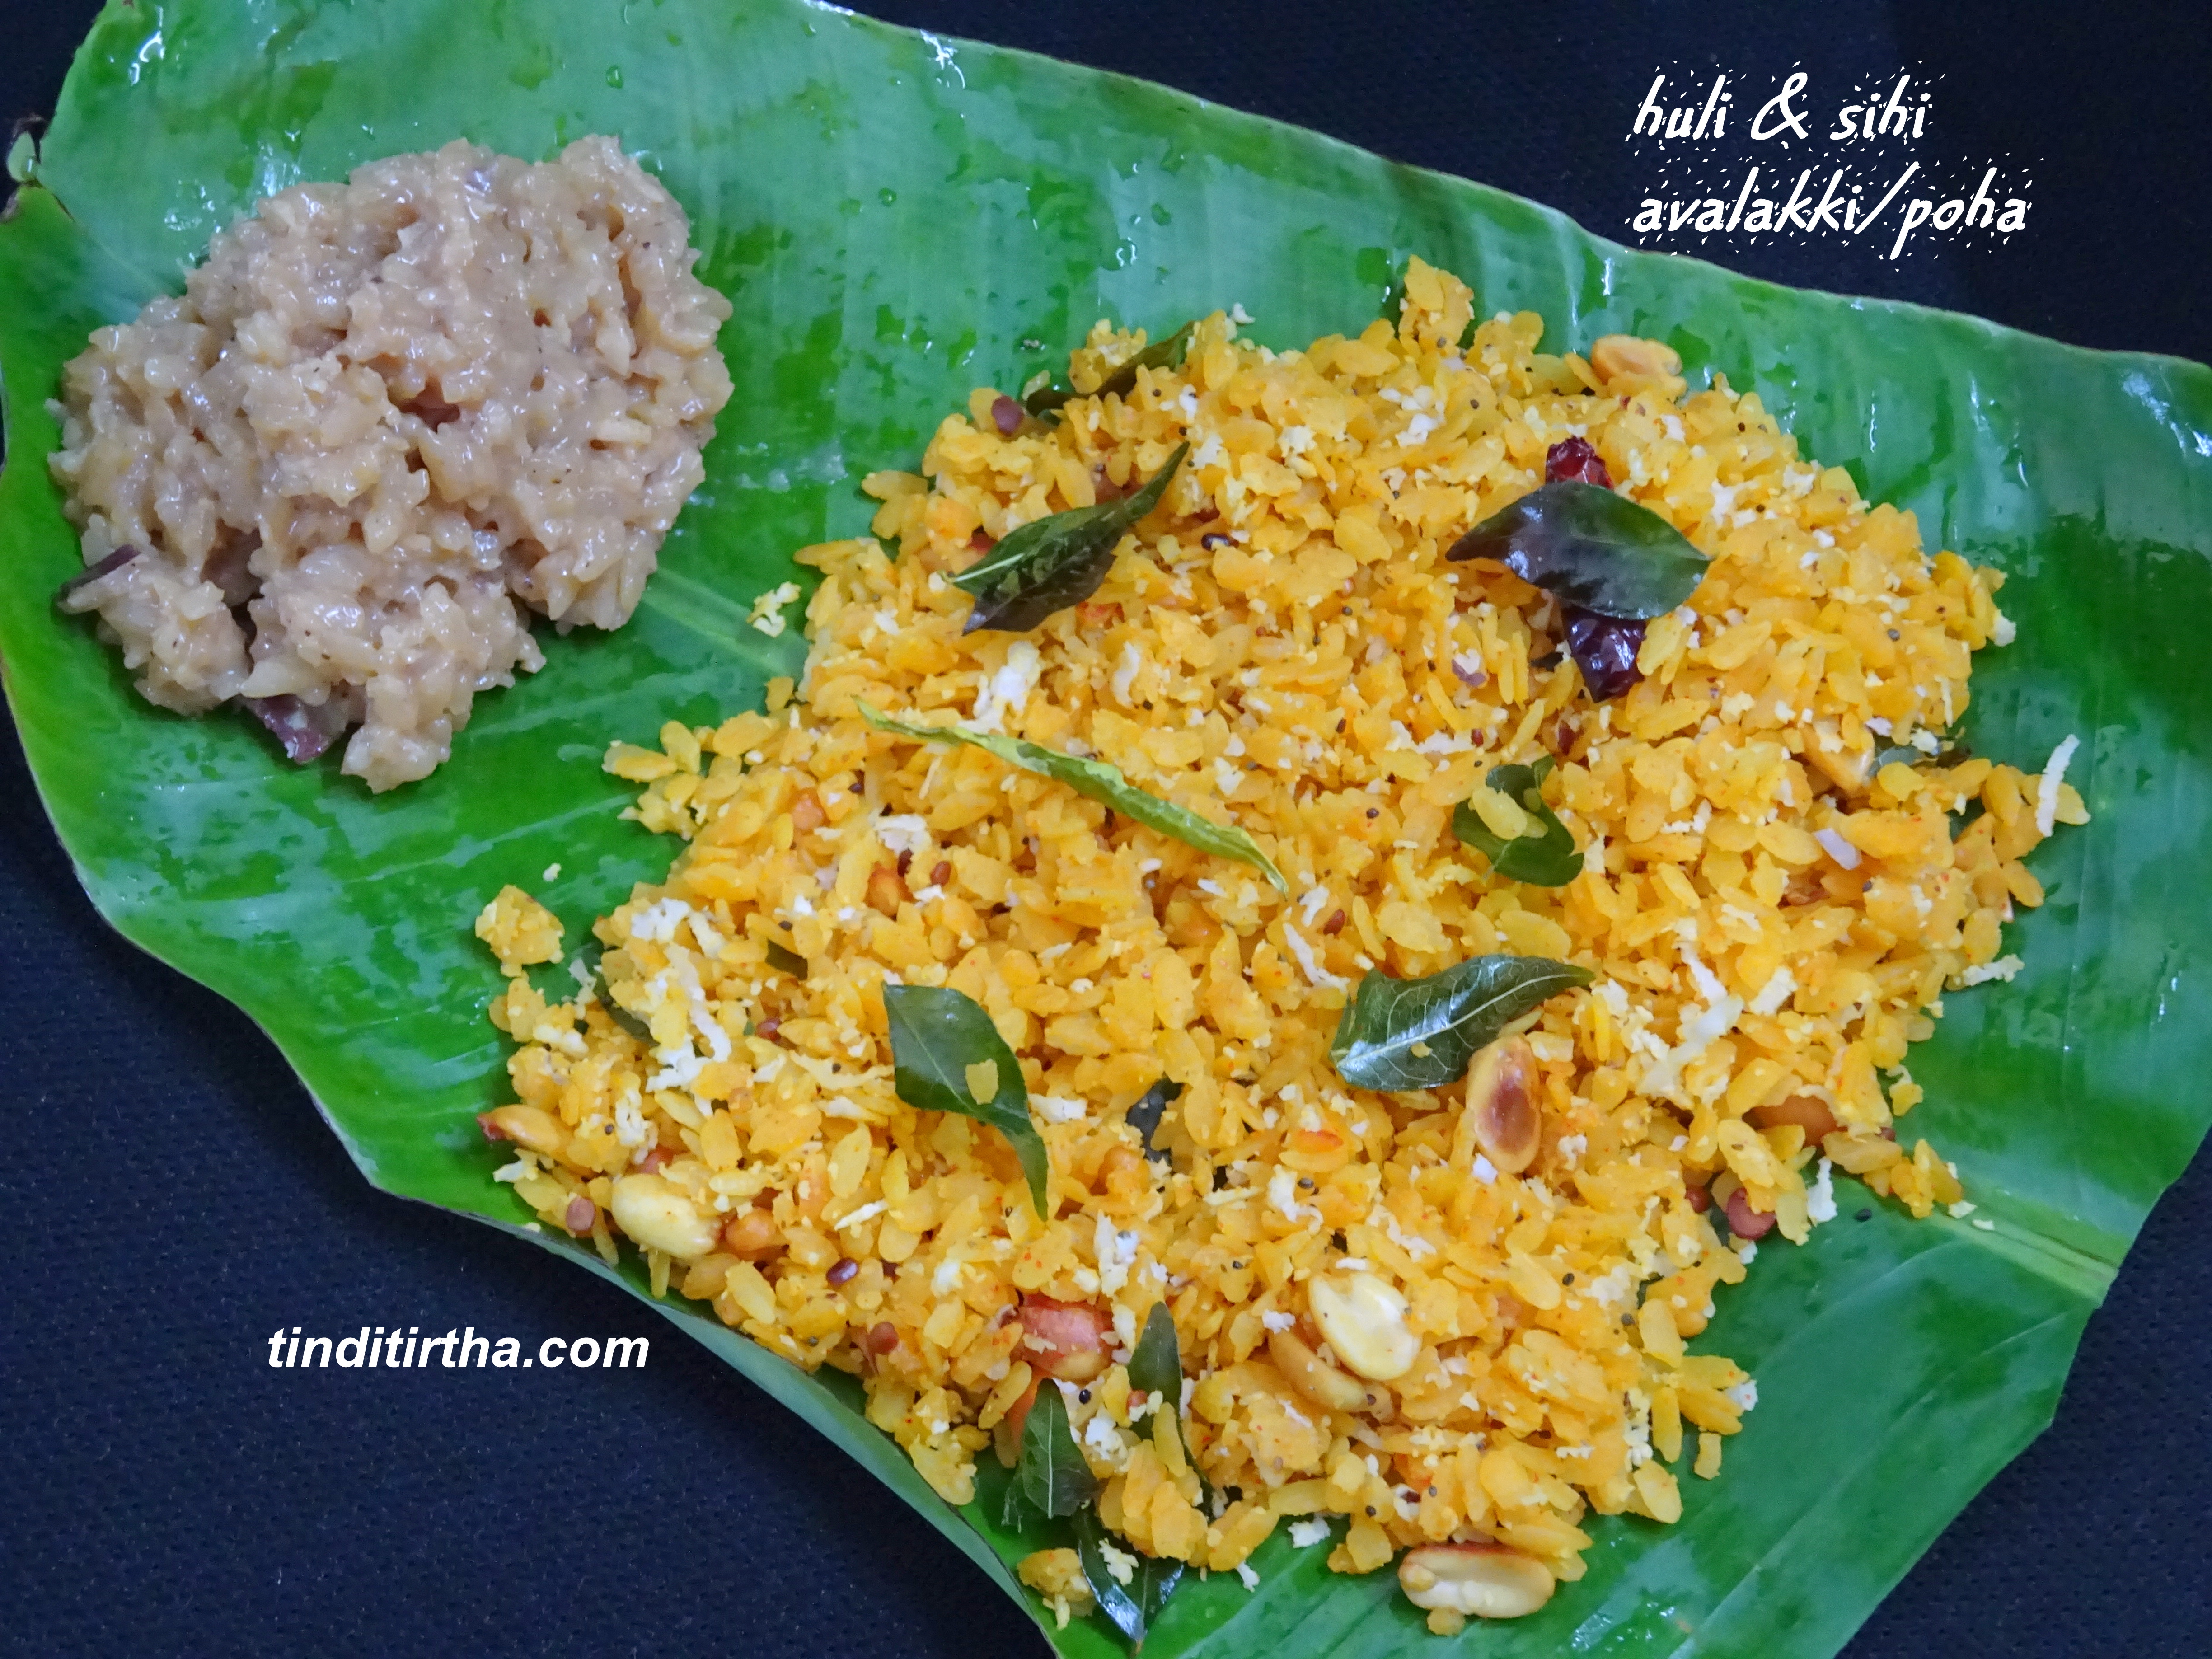 HULI – SIHI AVALAKKI sour-sweet Poha/rice flakes